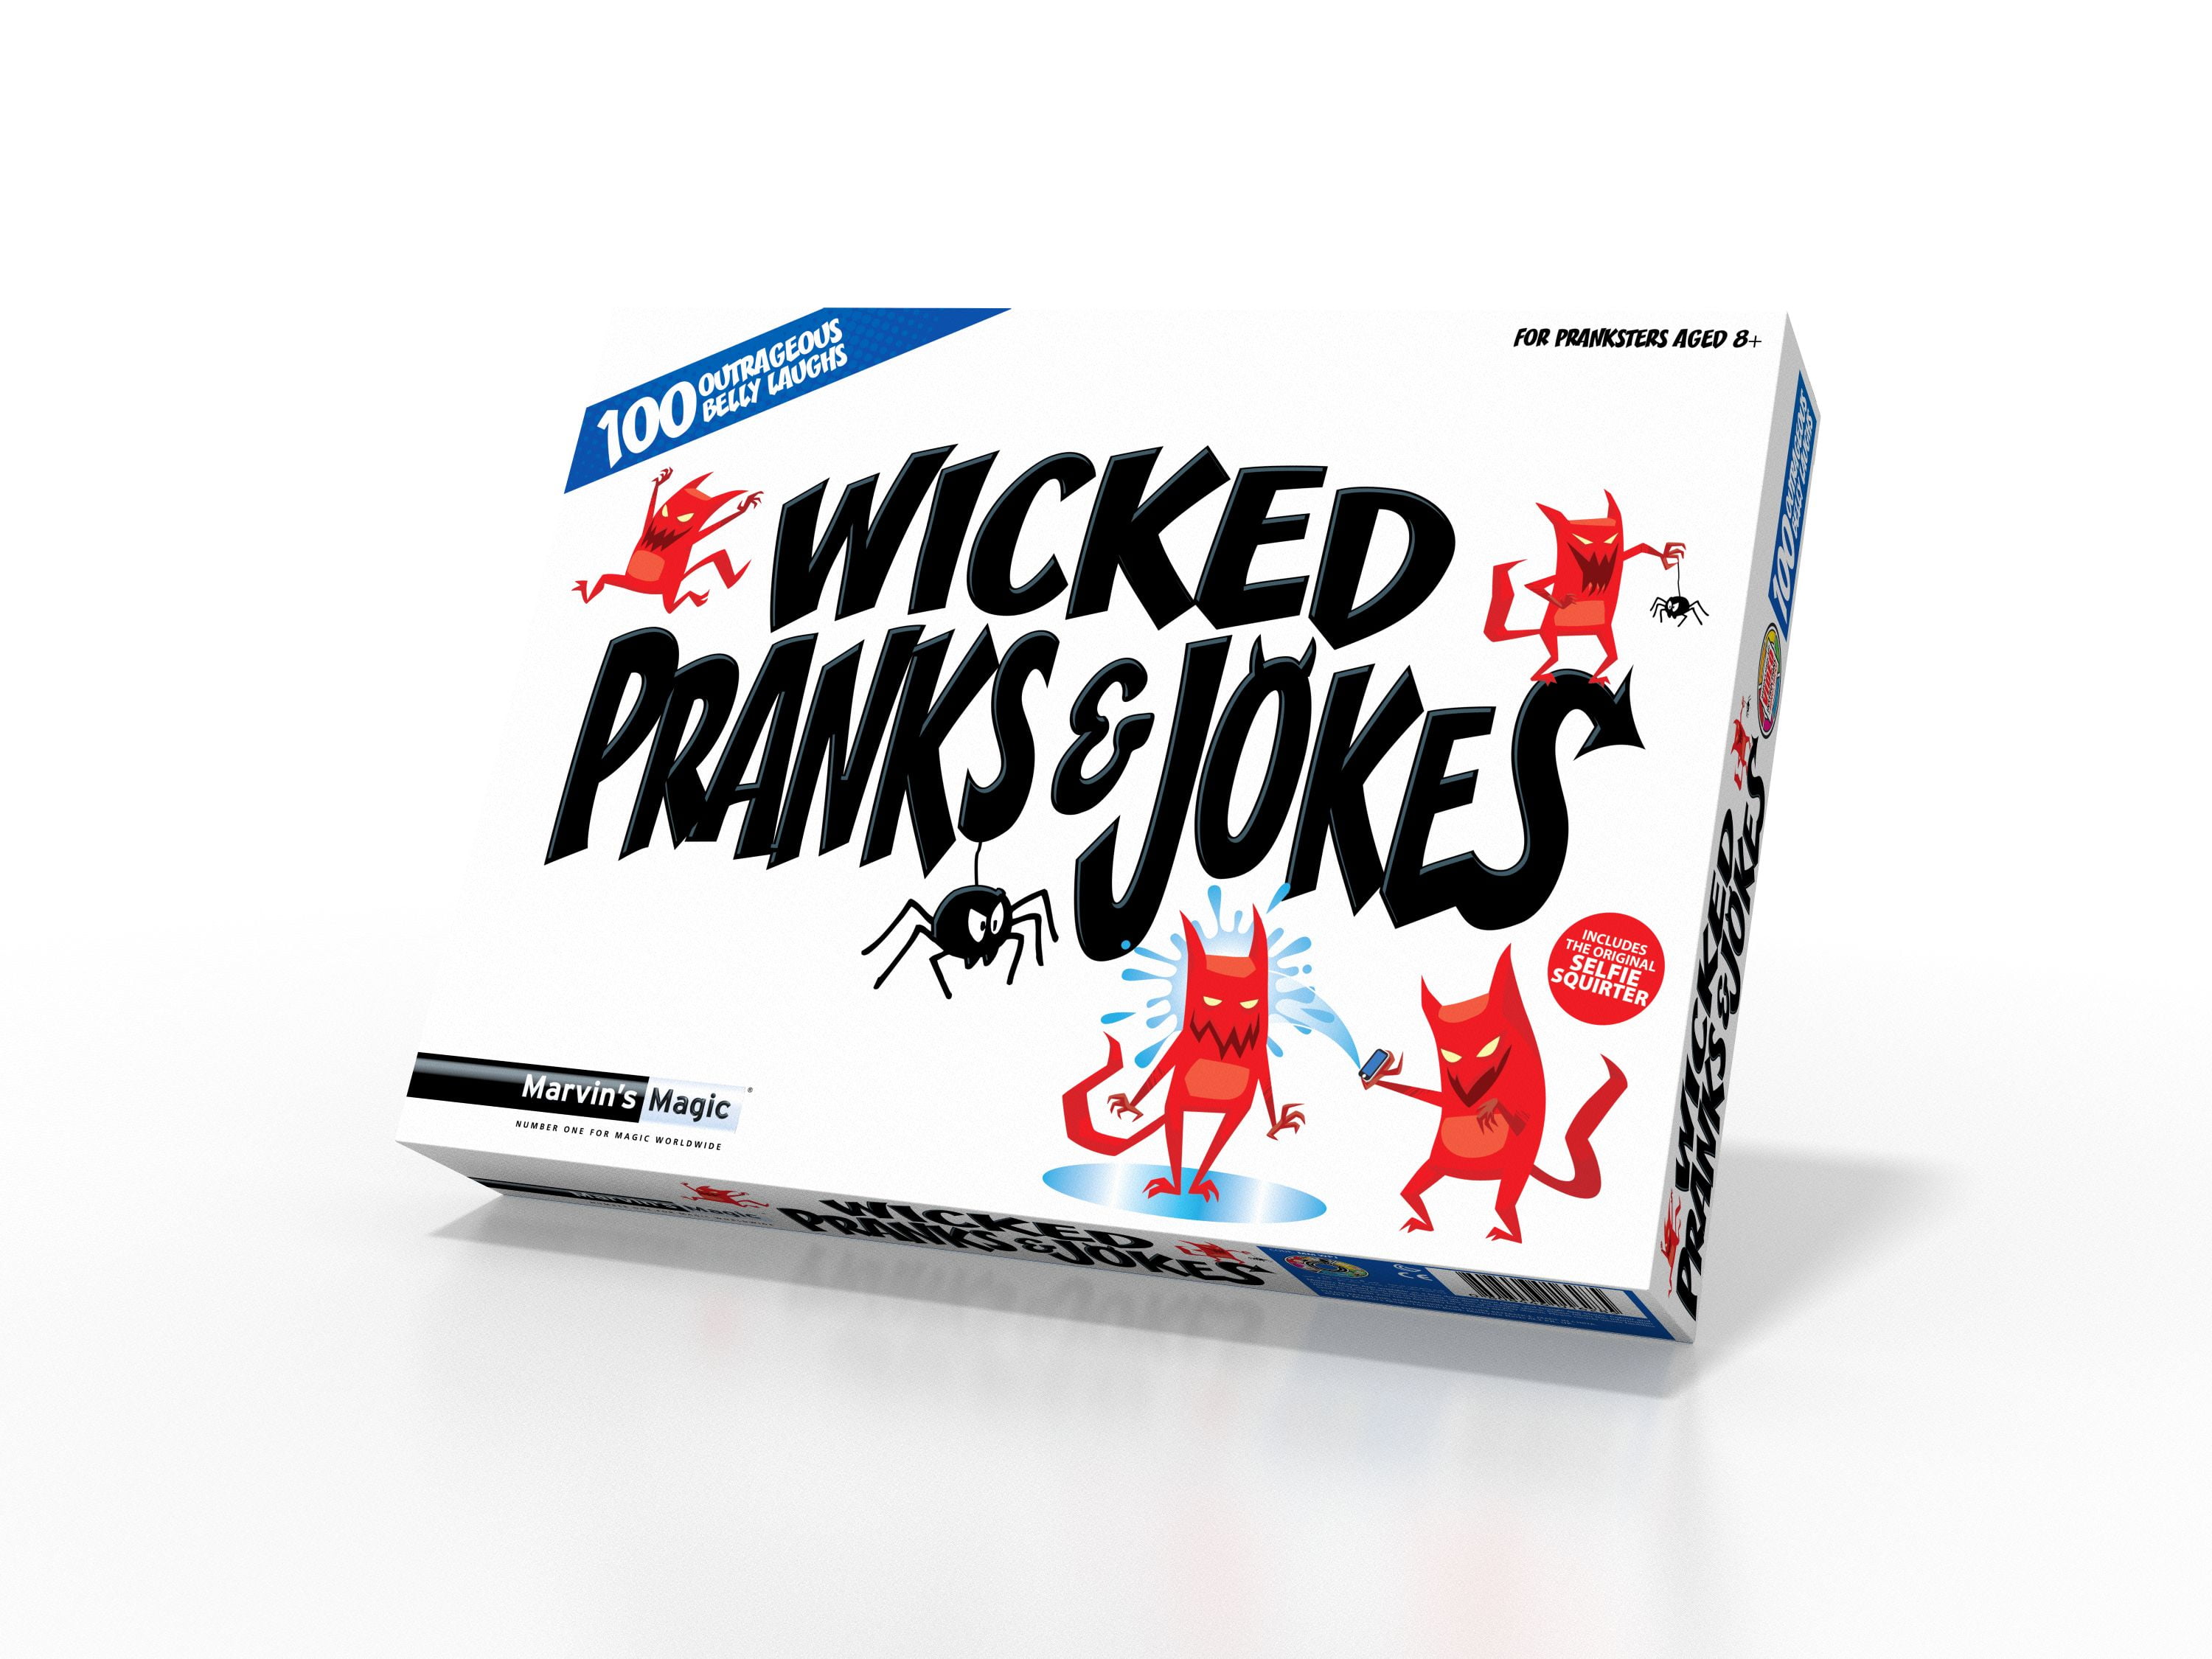 Drumond Park Horrid Practical Jokes GameChildren Action Prank Kit for Jokes & 